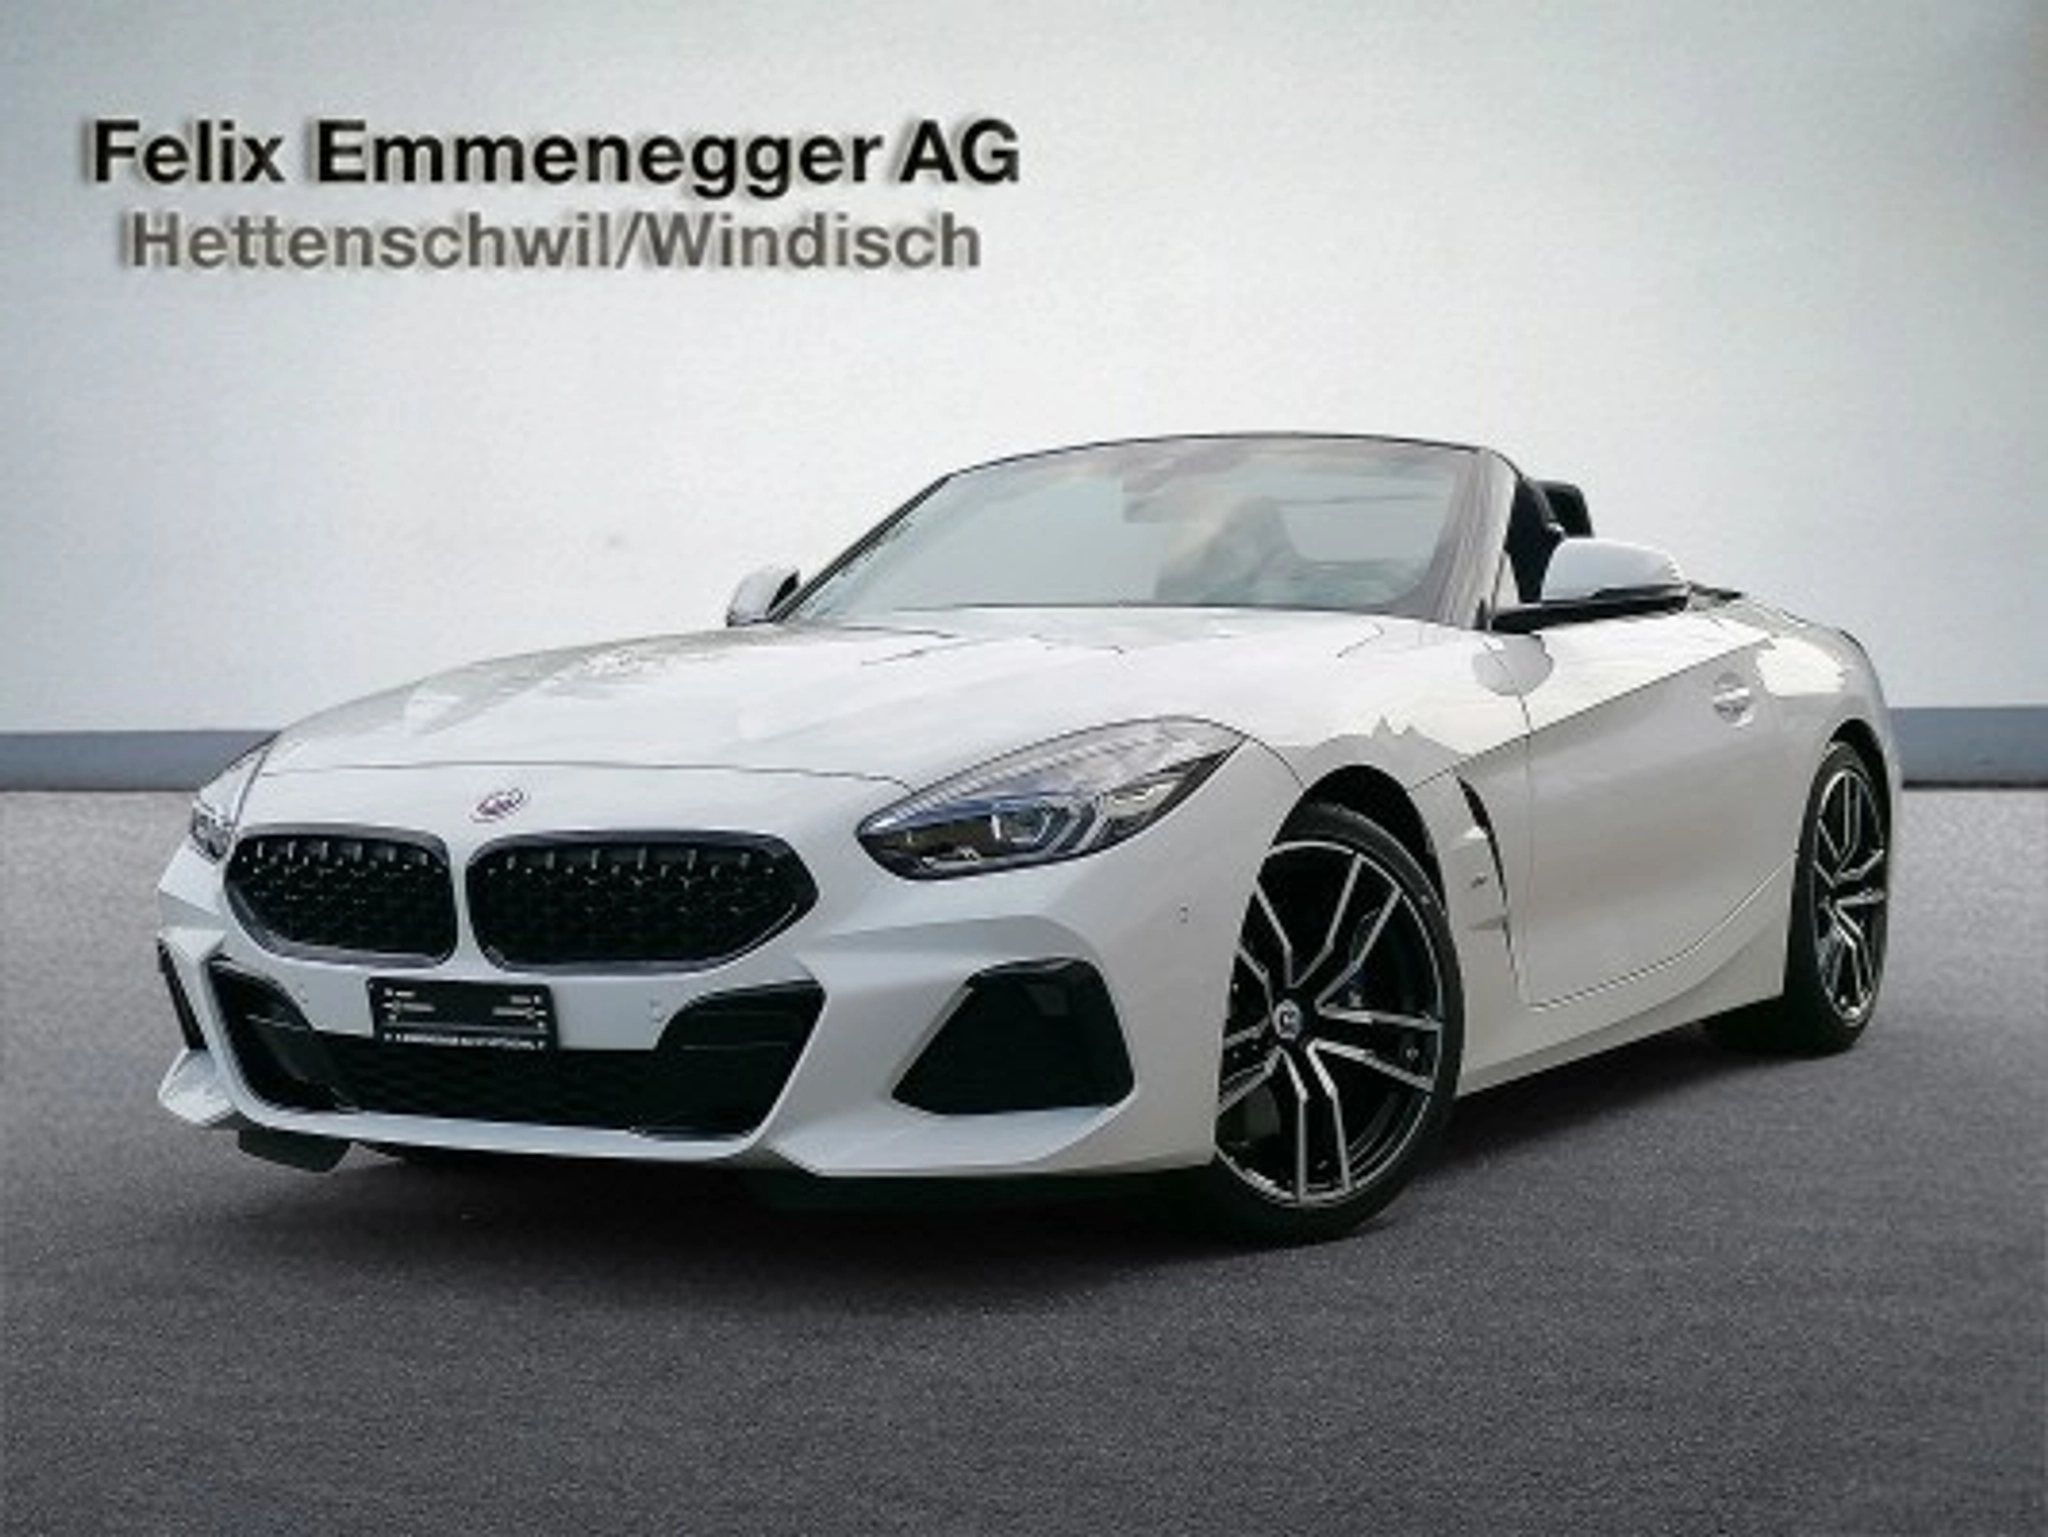 BMW-Z4-car-image